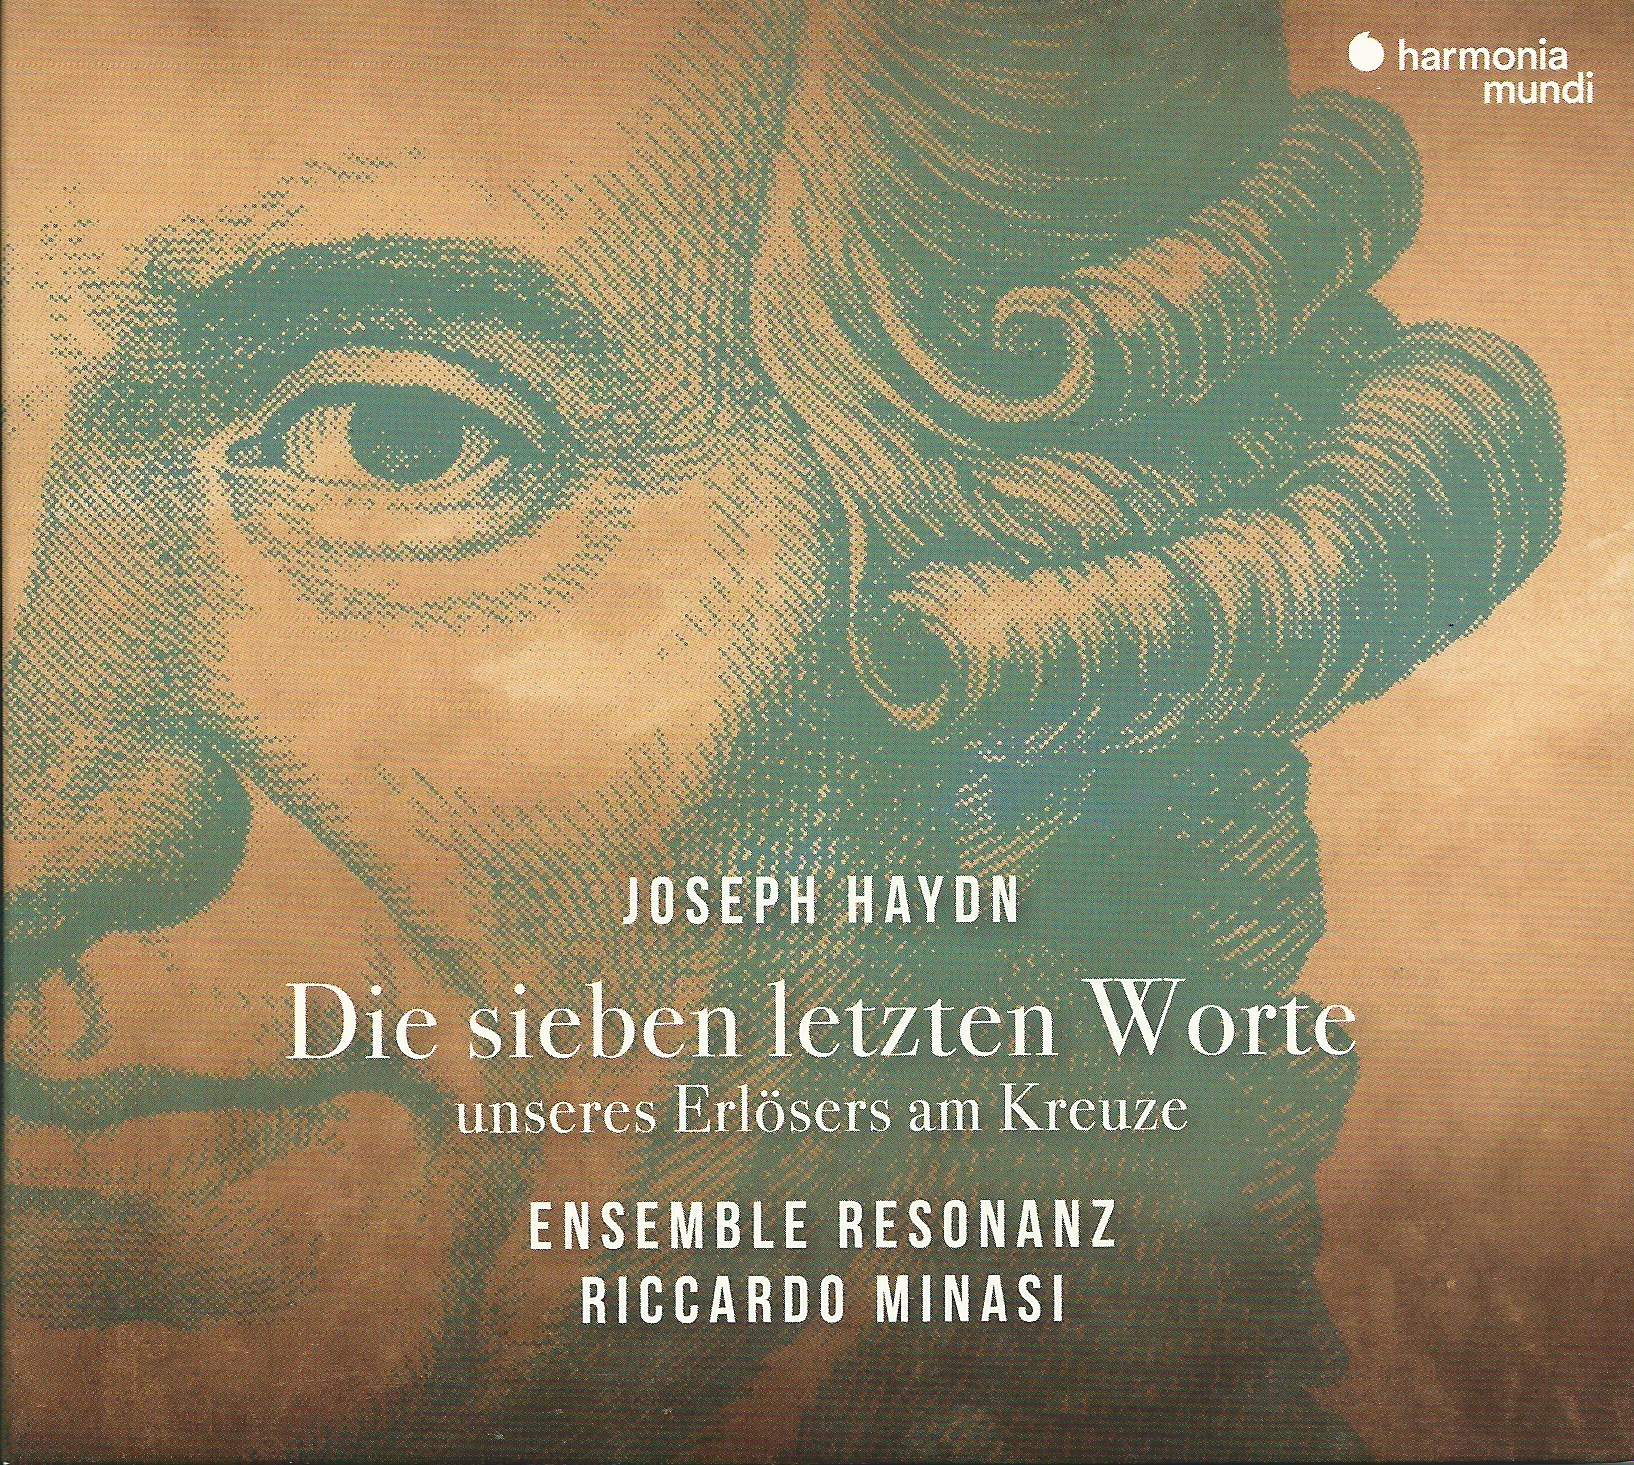 Haydns "letzte Worte", orchestral